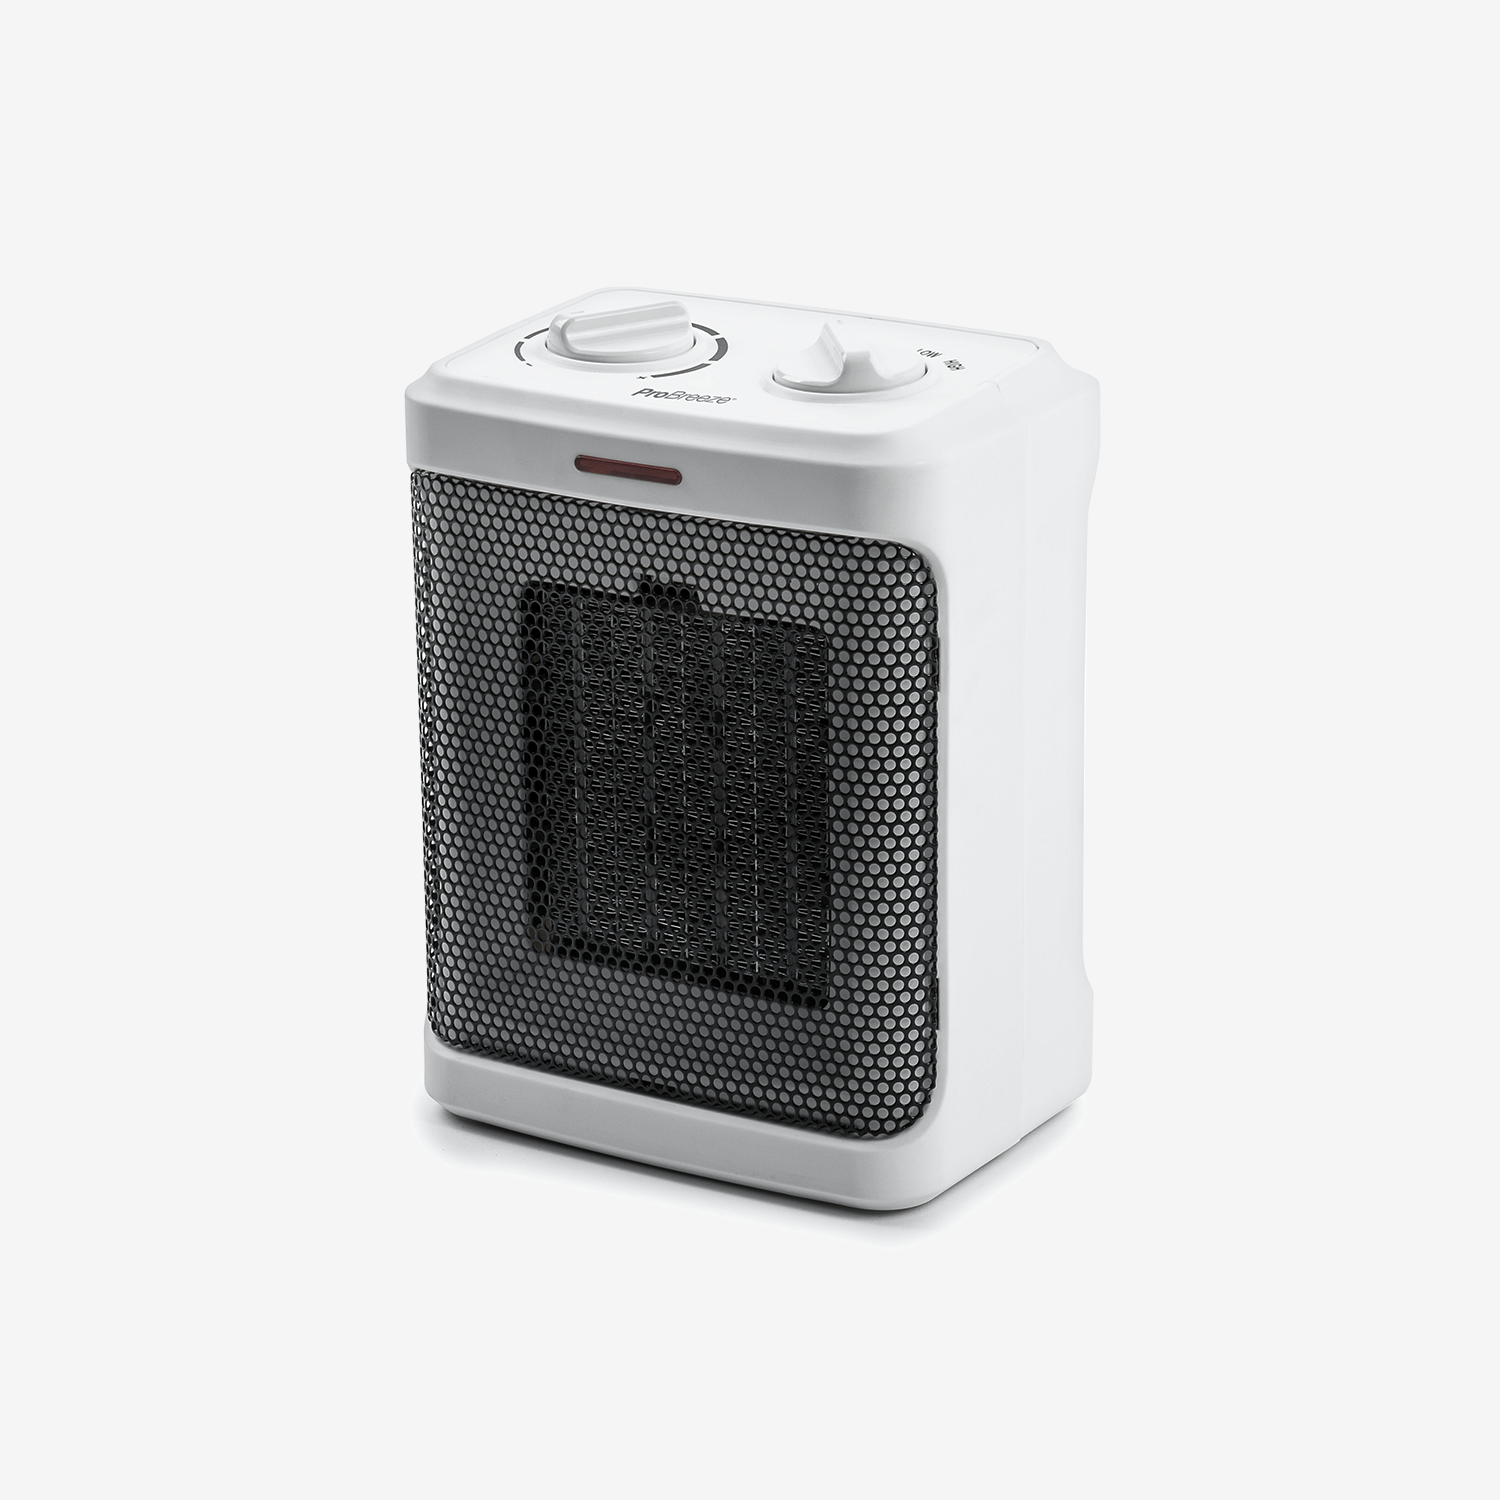 Mini radiateur en céramique 1500W - Blanc, Livraison gratuite